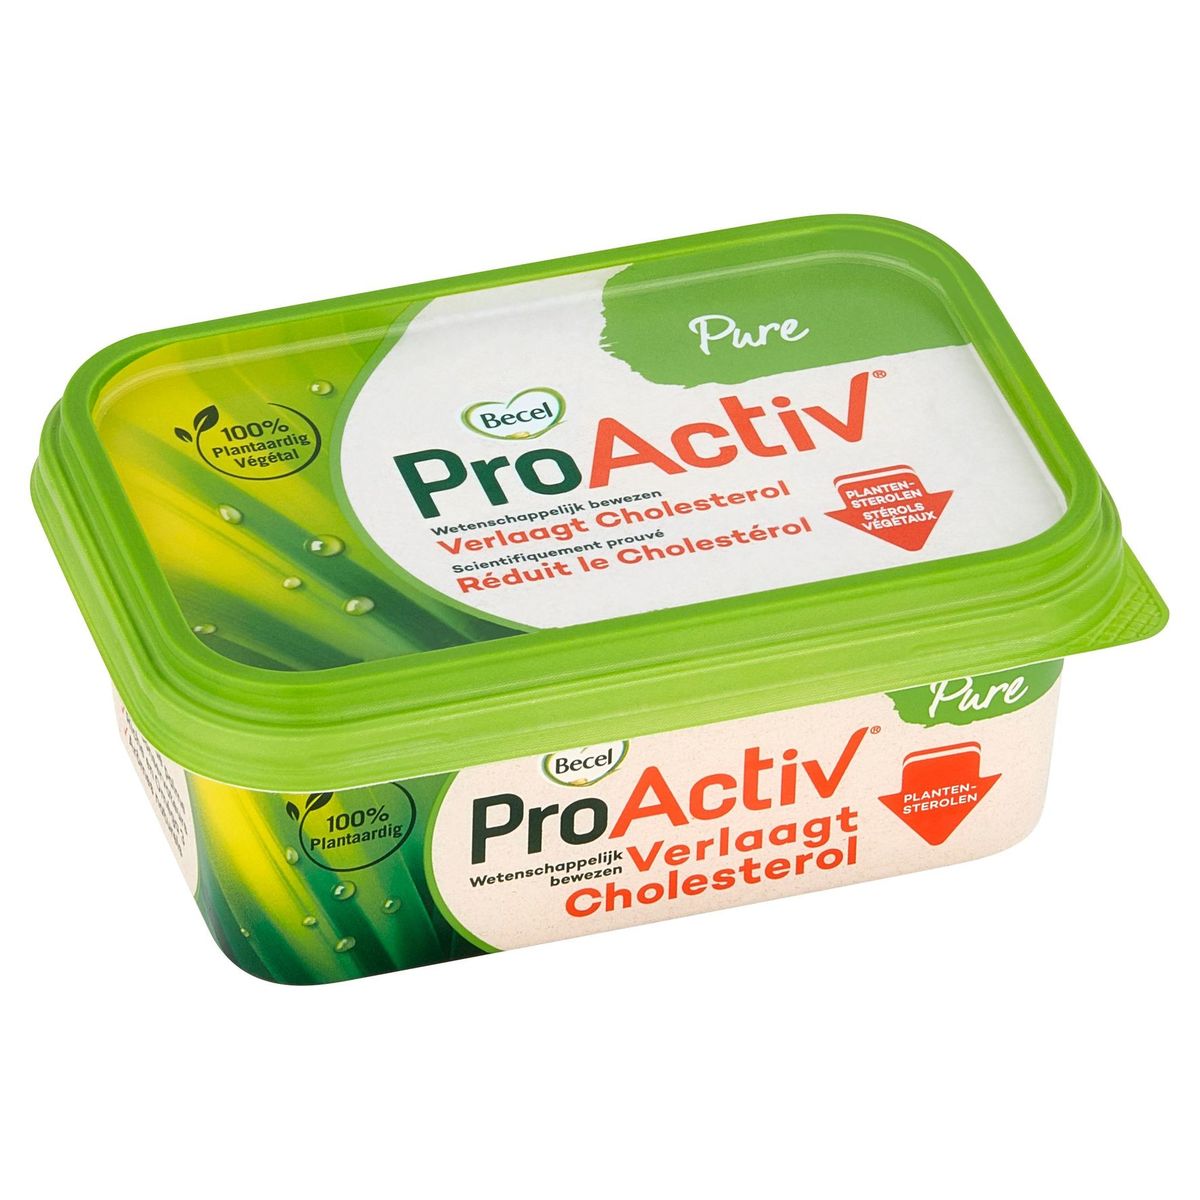 ProActiv | Réduit le cholestérol | Pure | 250g